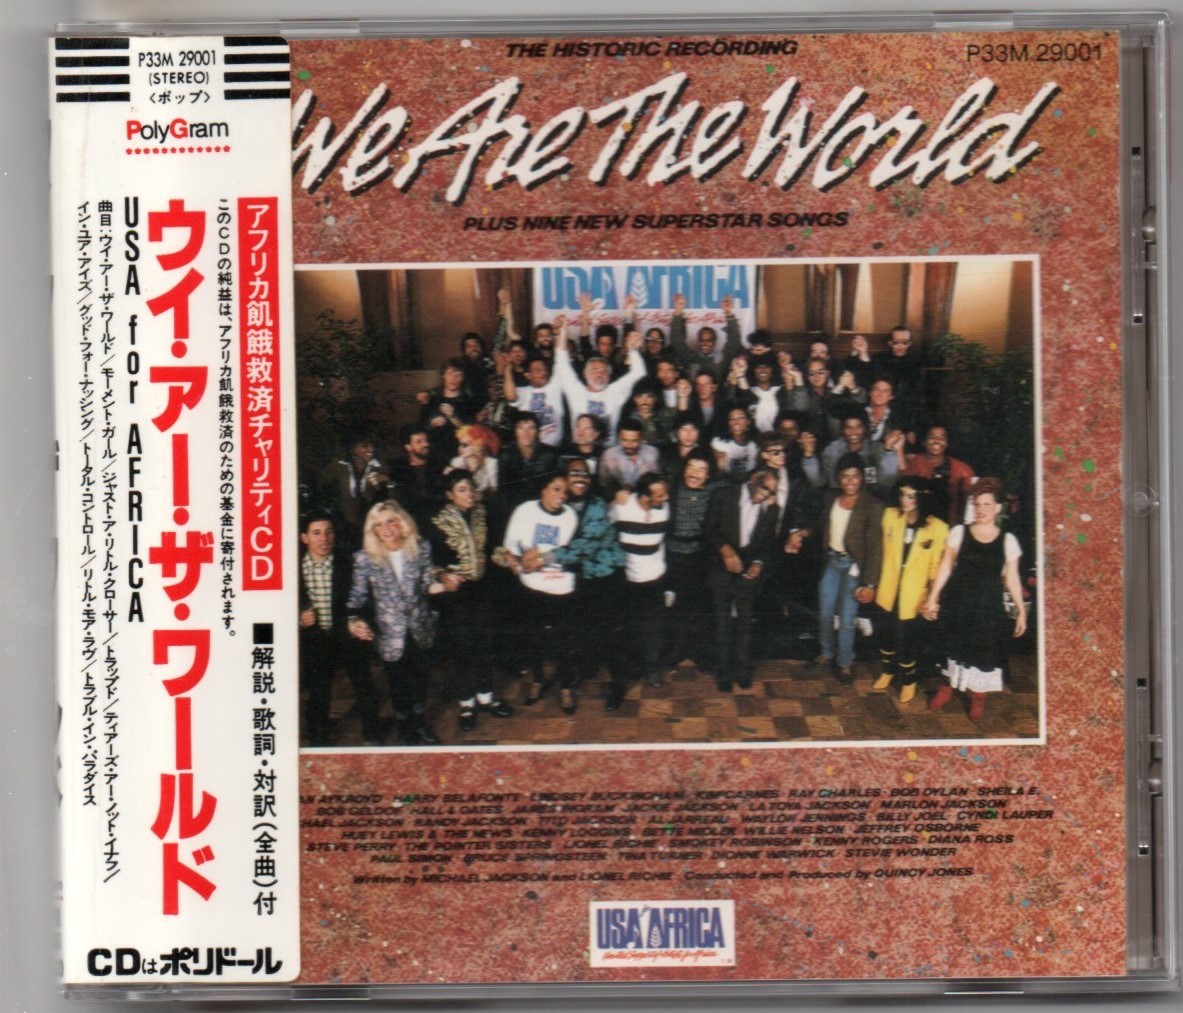 中古CD/ウイ・アー・ザ・ワールド USA for AFRICA (P33M 29001) シール帯 セル盤